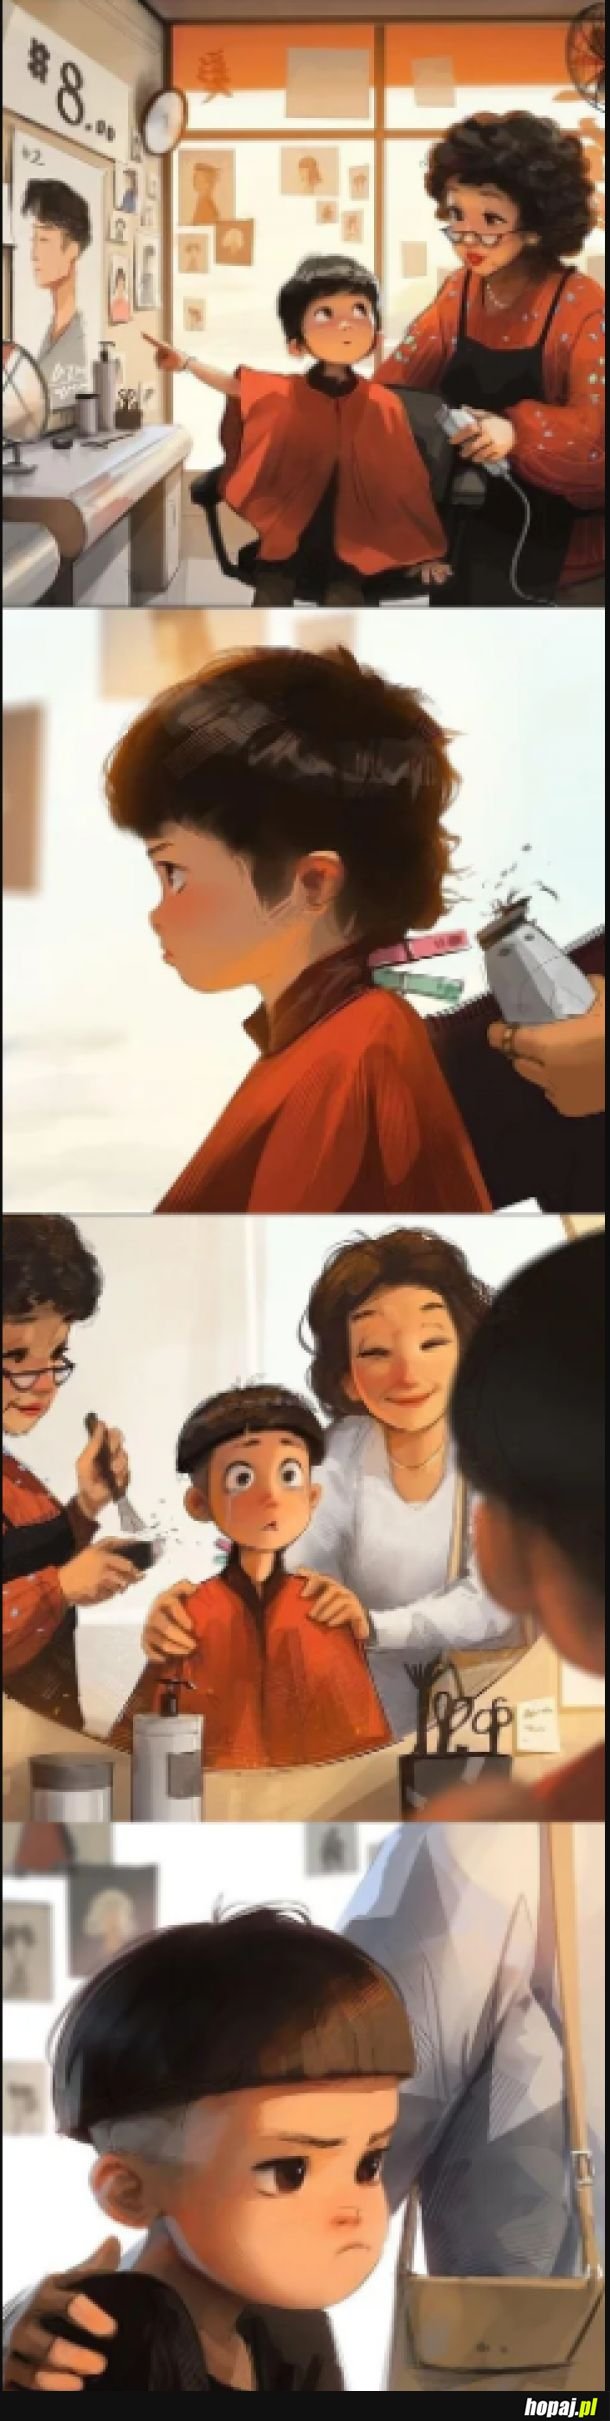 Każdy tak miewał u fryzjera